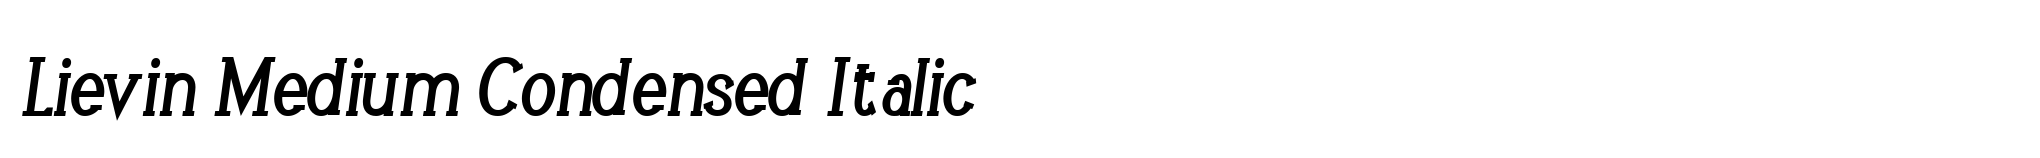 Lievin Medium Condensed Italic image